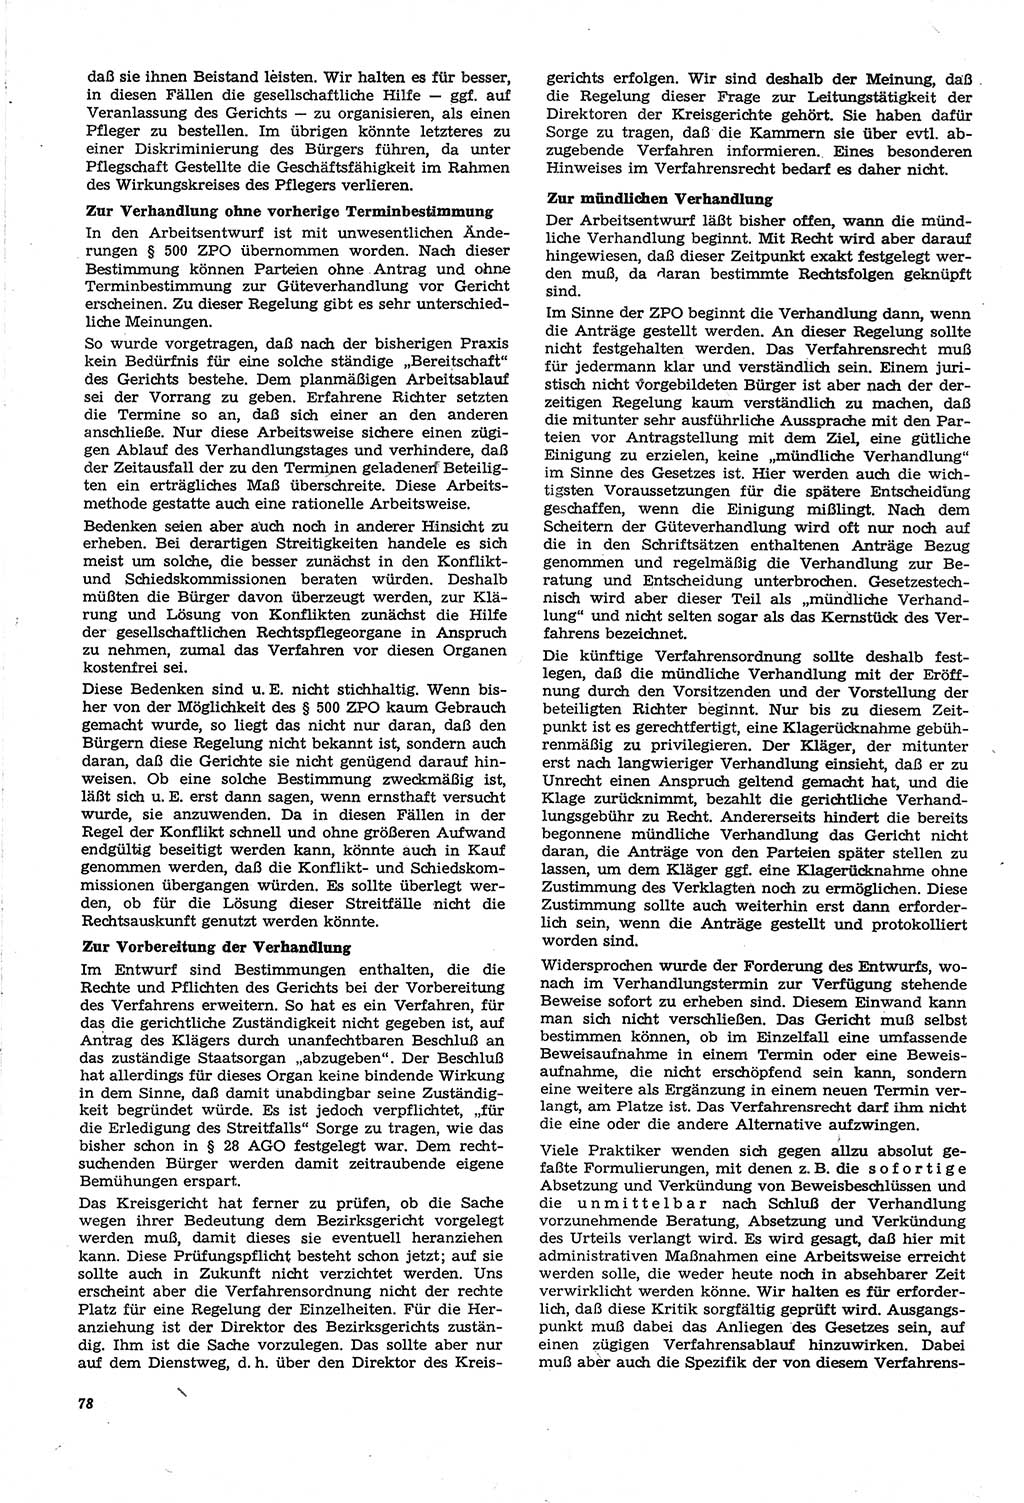 Neue Justiz (NJ), Zeitschrift für Recht und Rechtswissenschaft [Deutsche Demokratische Republik (DDR)], 21. Jahrgang 1967, Seite 78 (NJ DDR 1967, S. 78)